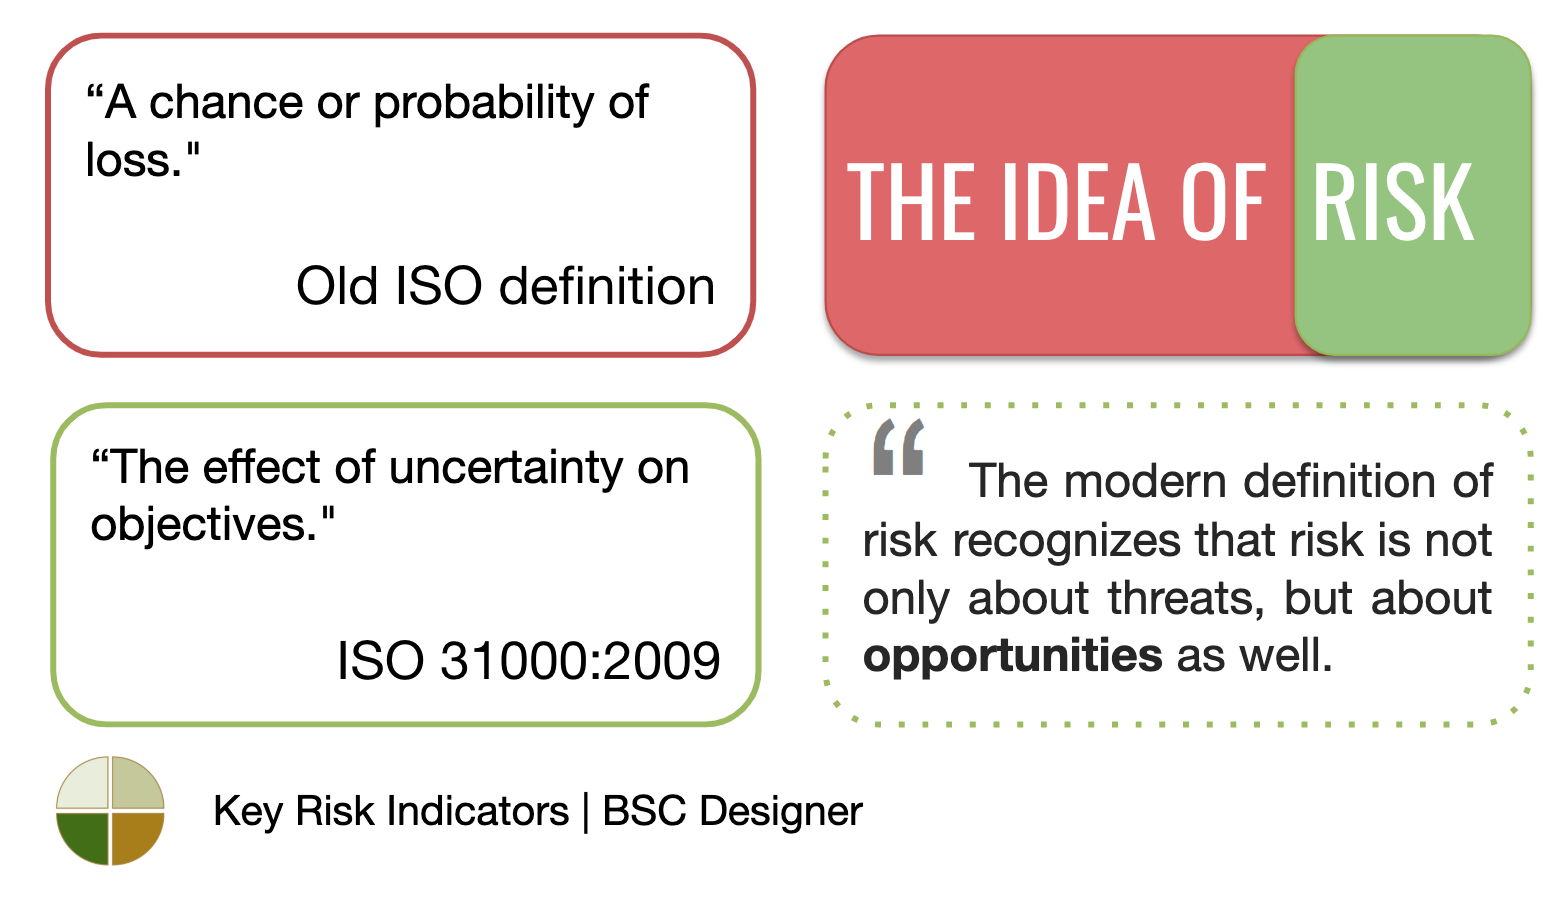 The idea of risk